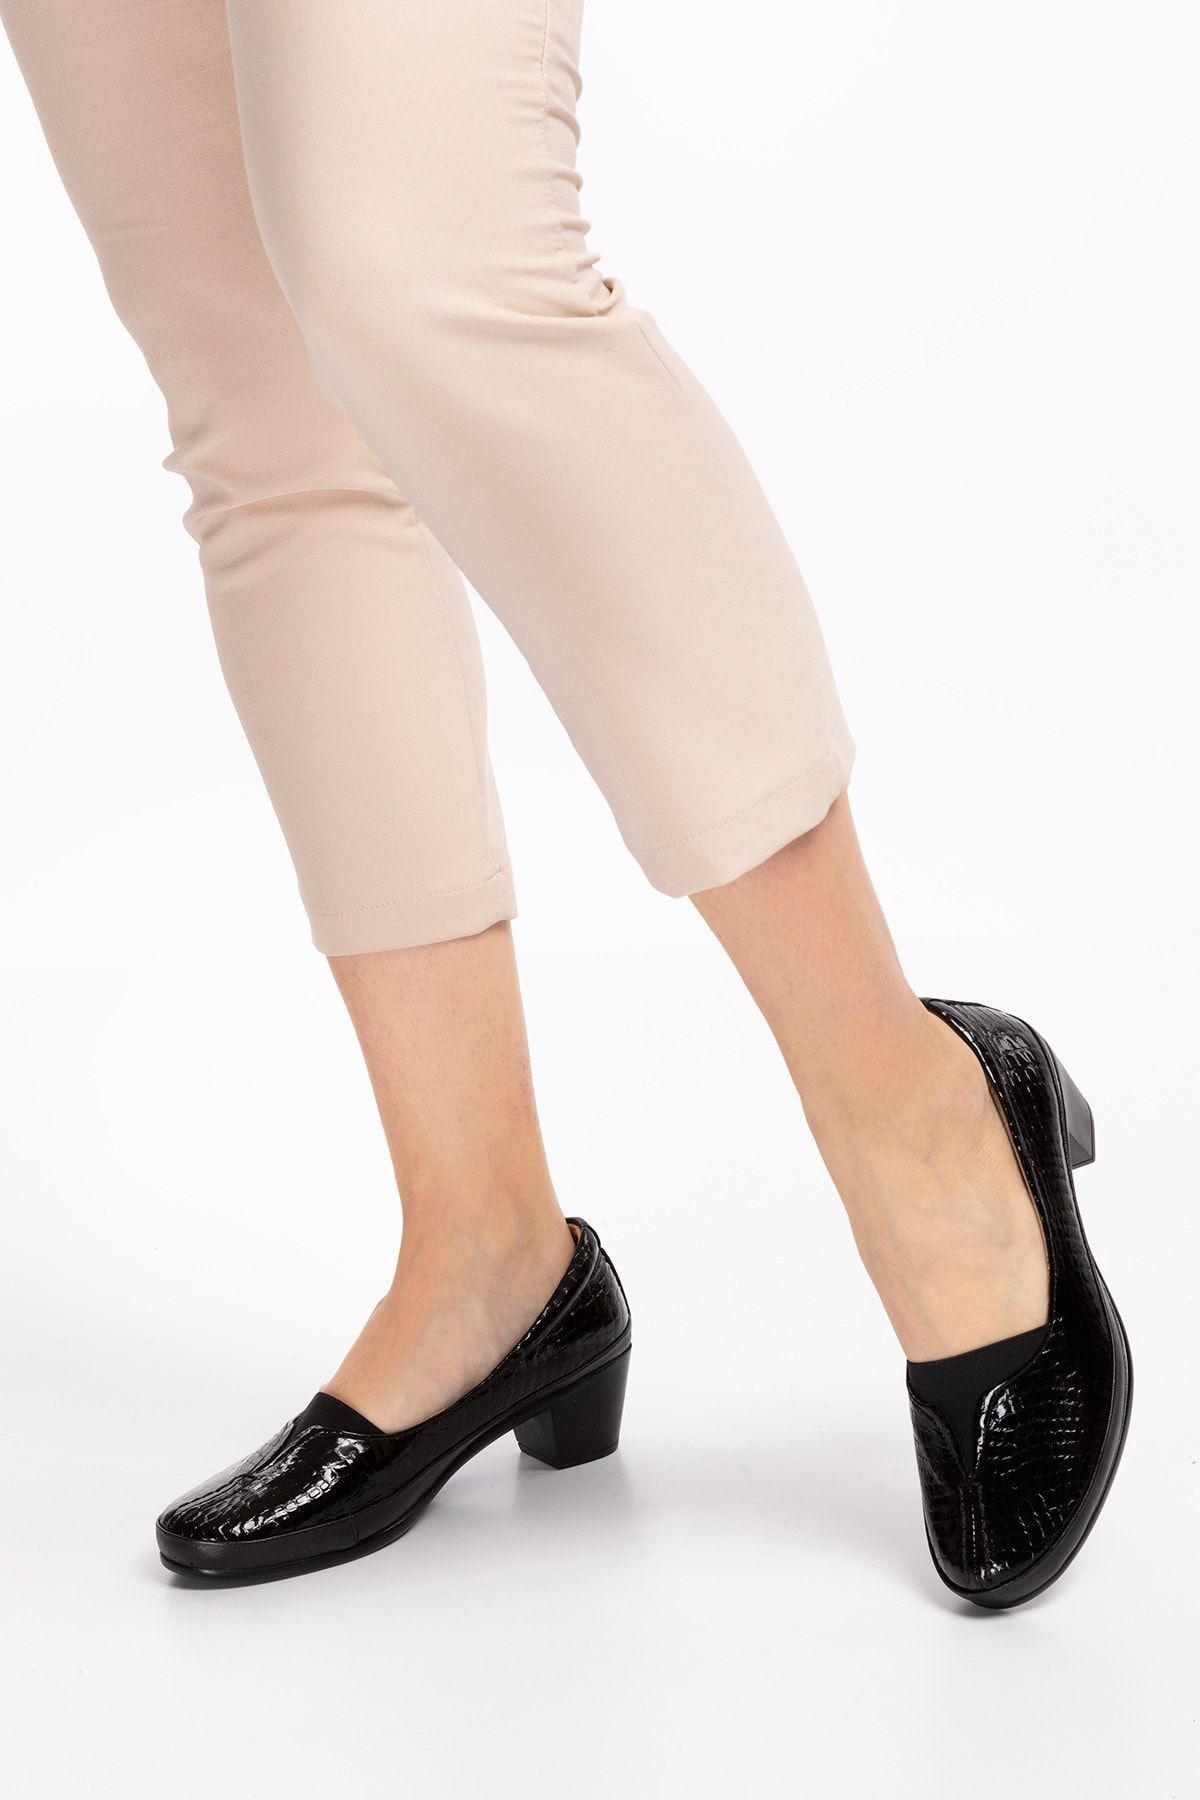 Akgün Terlik Kadın Siyah Hakiki Deri Topuklu Şık Ayakkabı